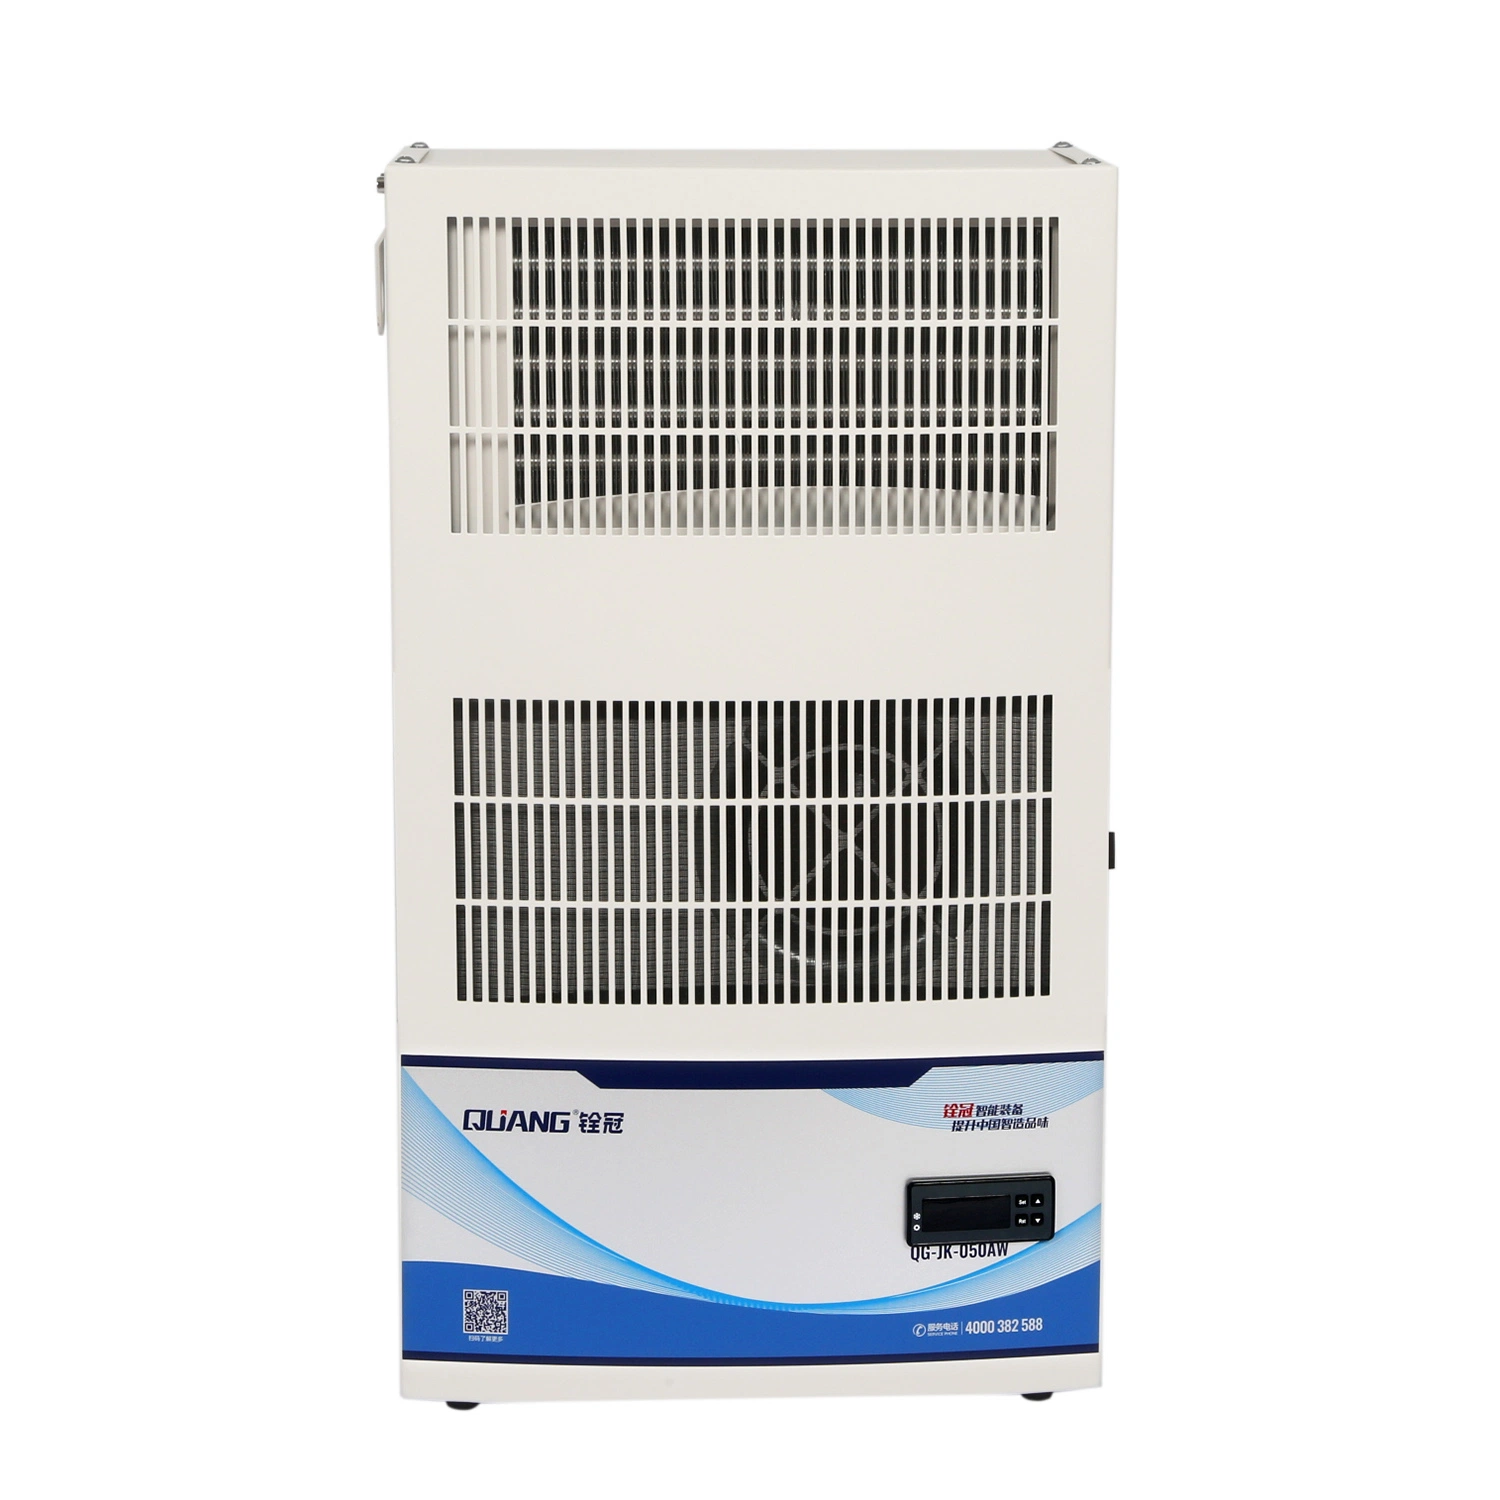 Air Cooled Electric Cabinet Air Conditioner fournit un équipement de réfrigération industriel (QG-JK-100)